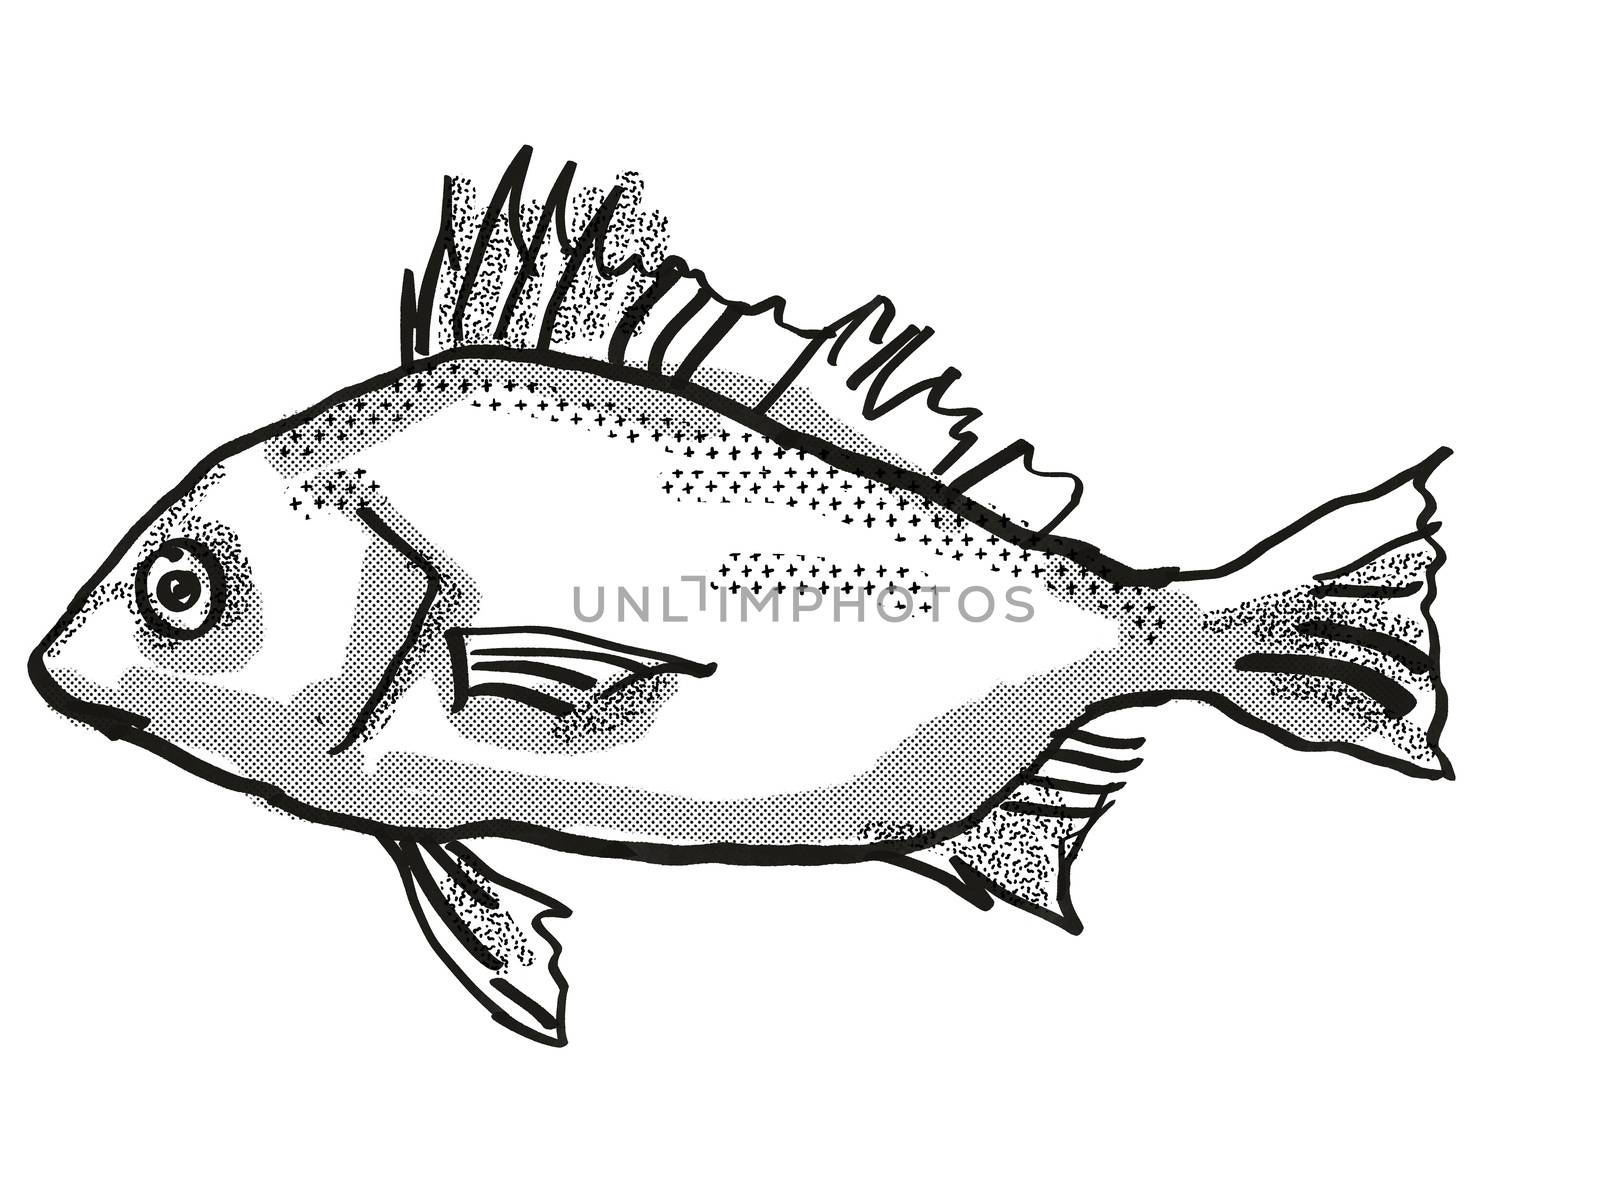 Silver Javelin Australian Fish Cartoon Retro Drawing by patrimonio